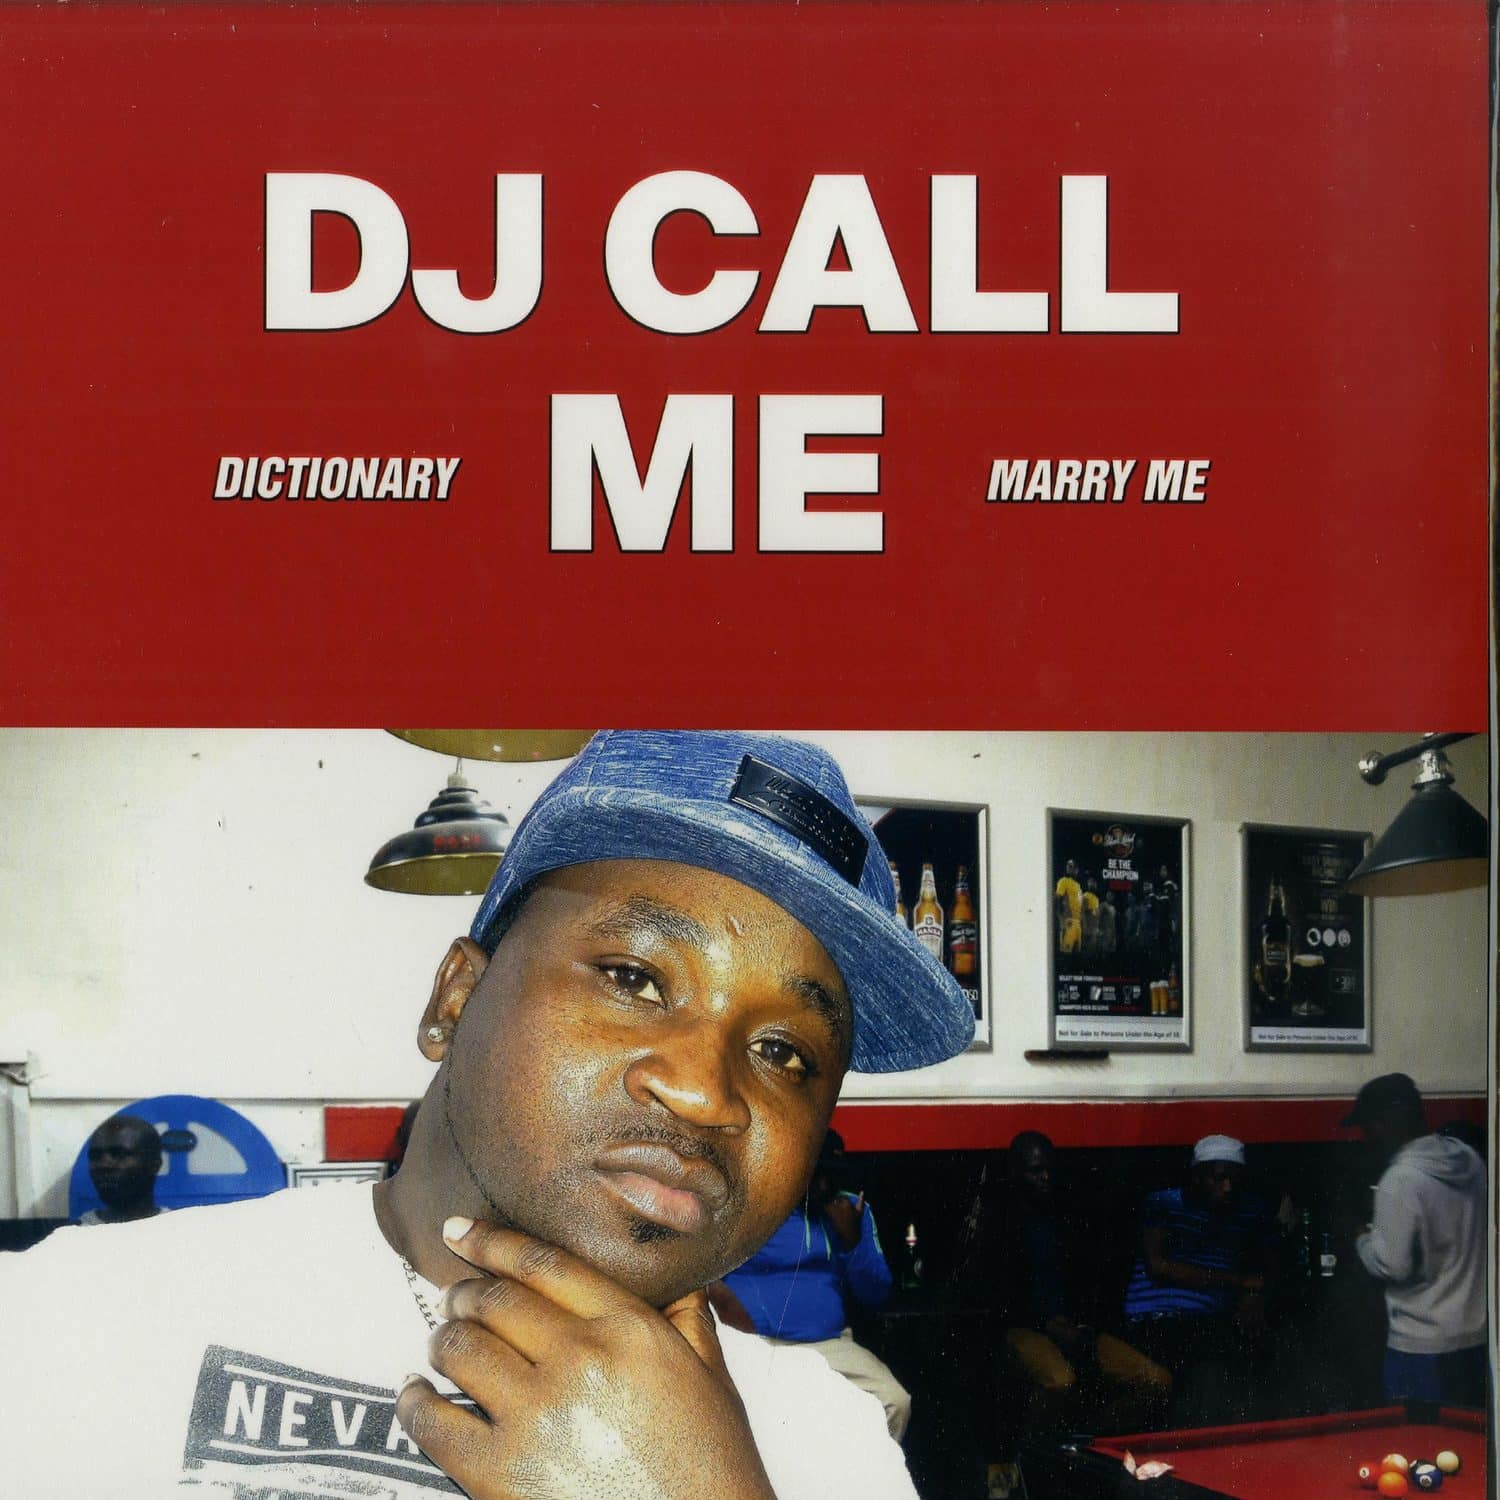 DJ Call Me - MARRY ME EP